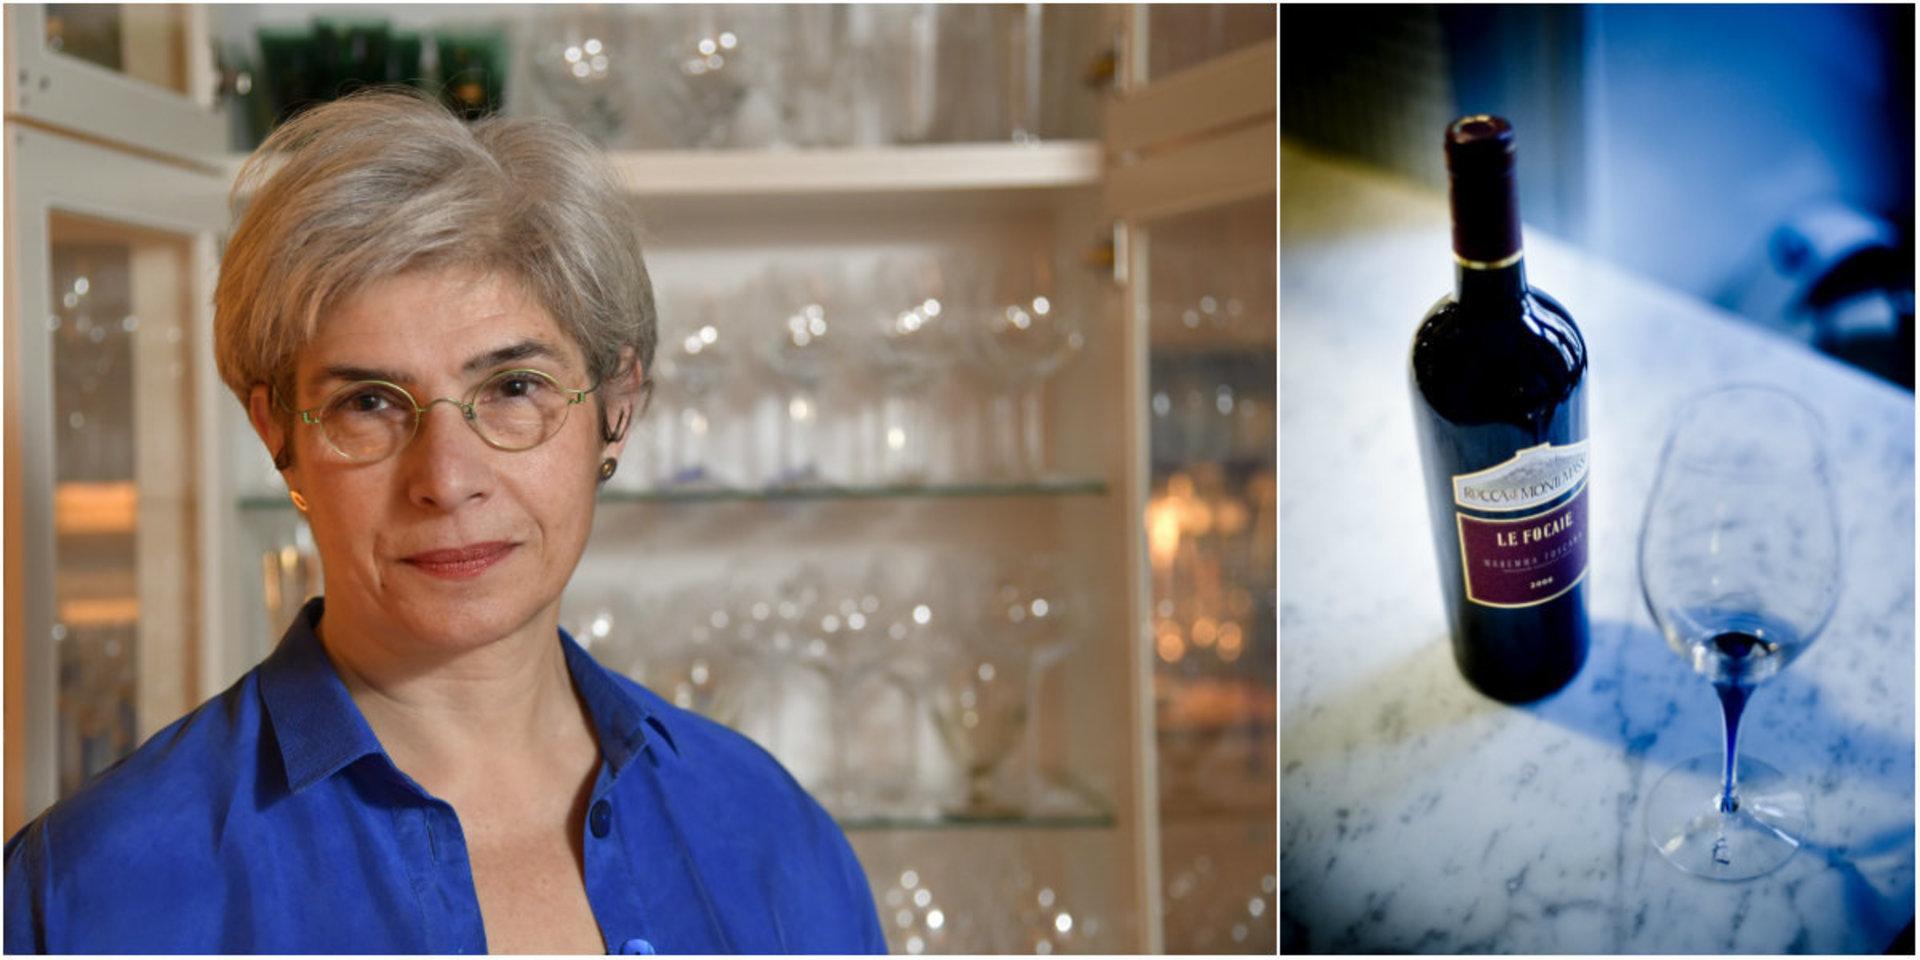 Erika Lagerbielke, formgivare och professor i glasdesign, fyller 60 år. Hennes allra mest kända och populära glasservis är Intermezzo med den blå droppen.  